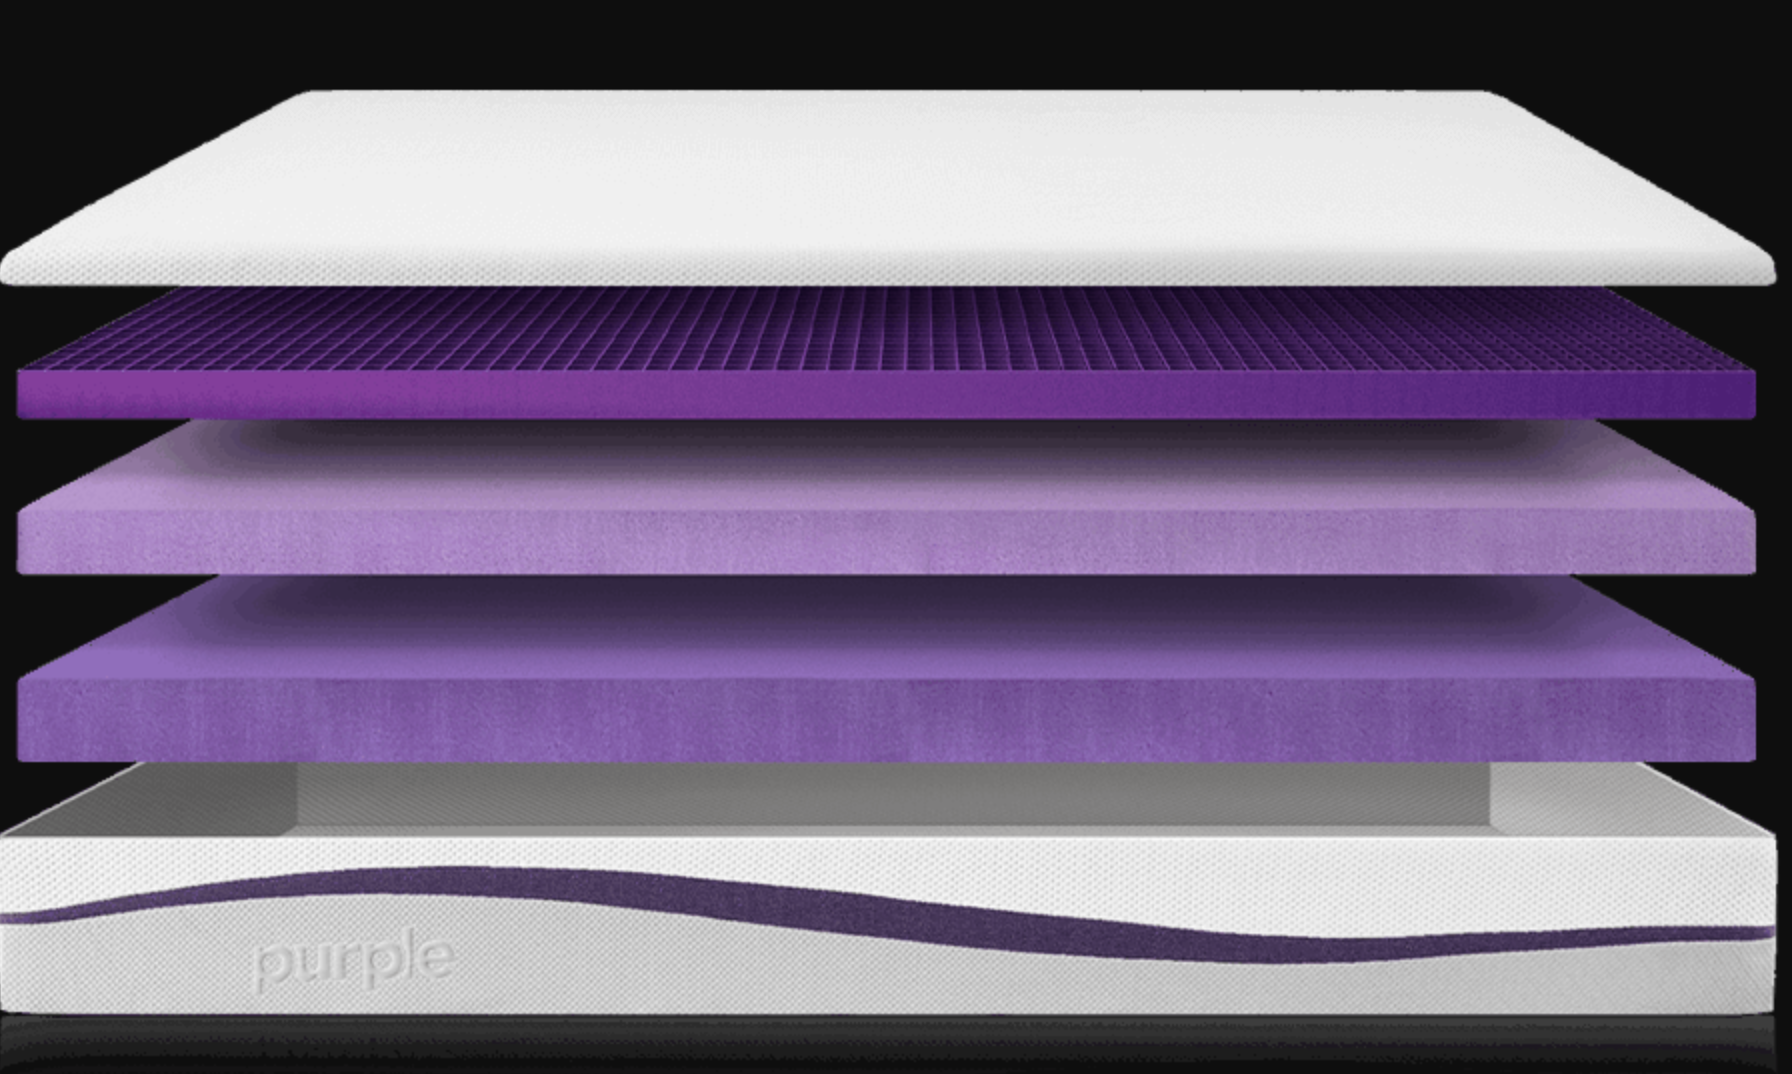 life in purple mattress